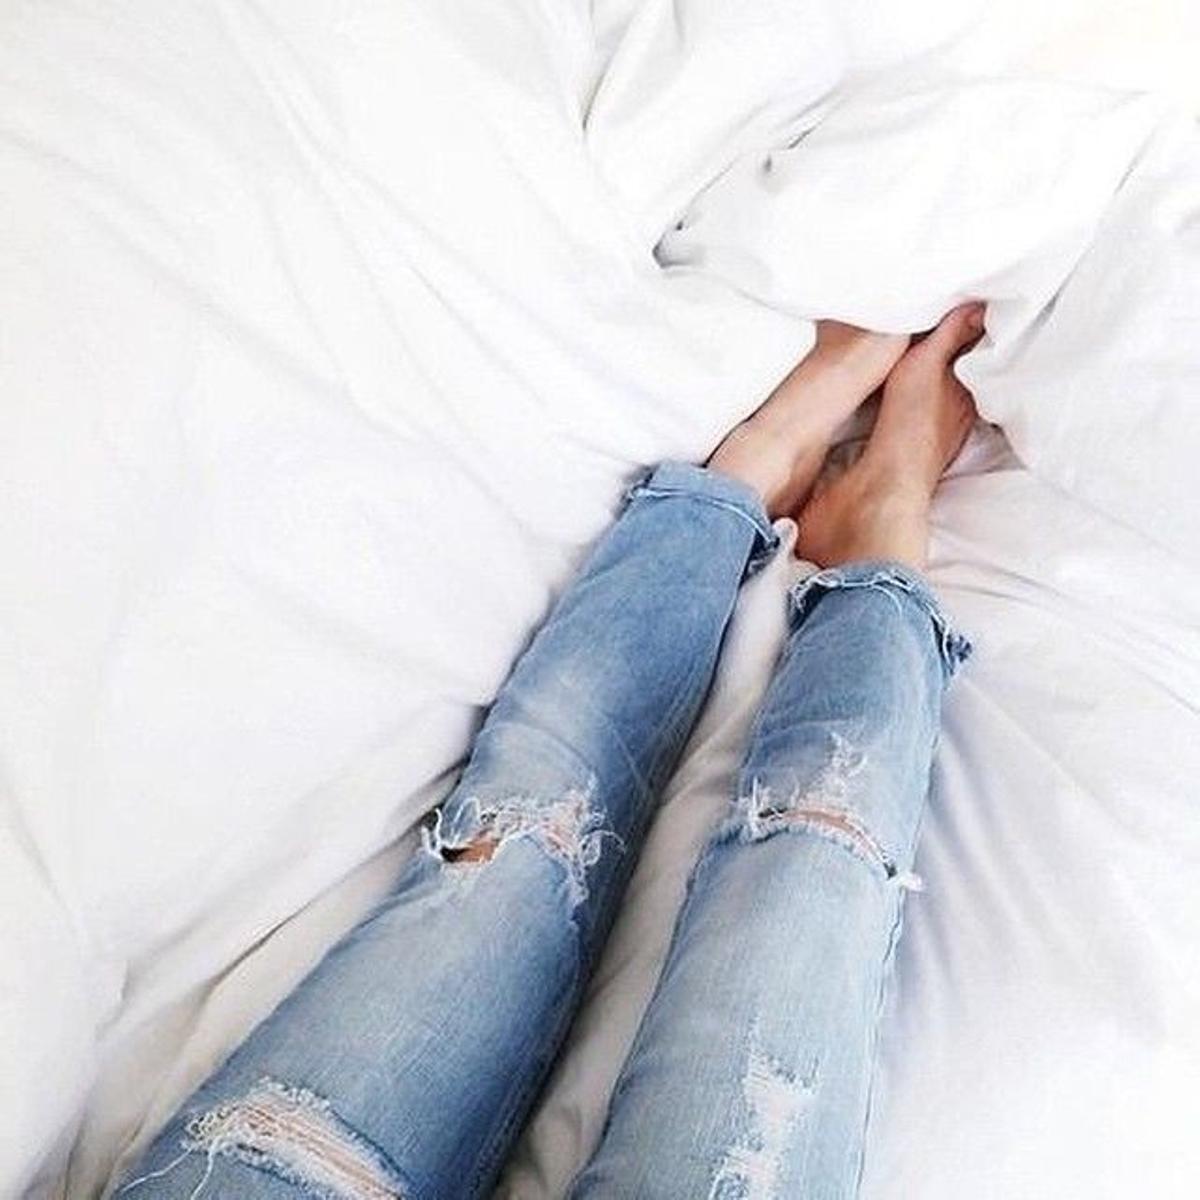 Dobladillo de pantalón en Instagram, Diana Enciu